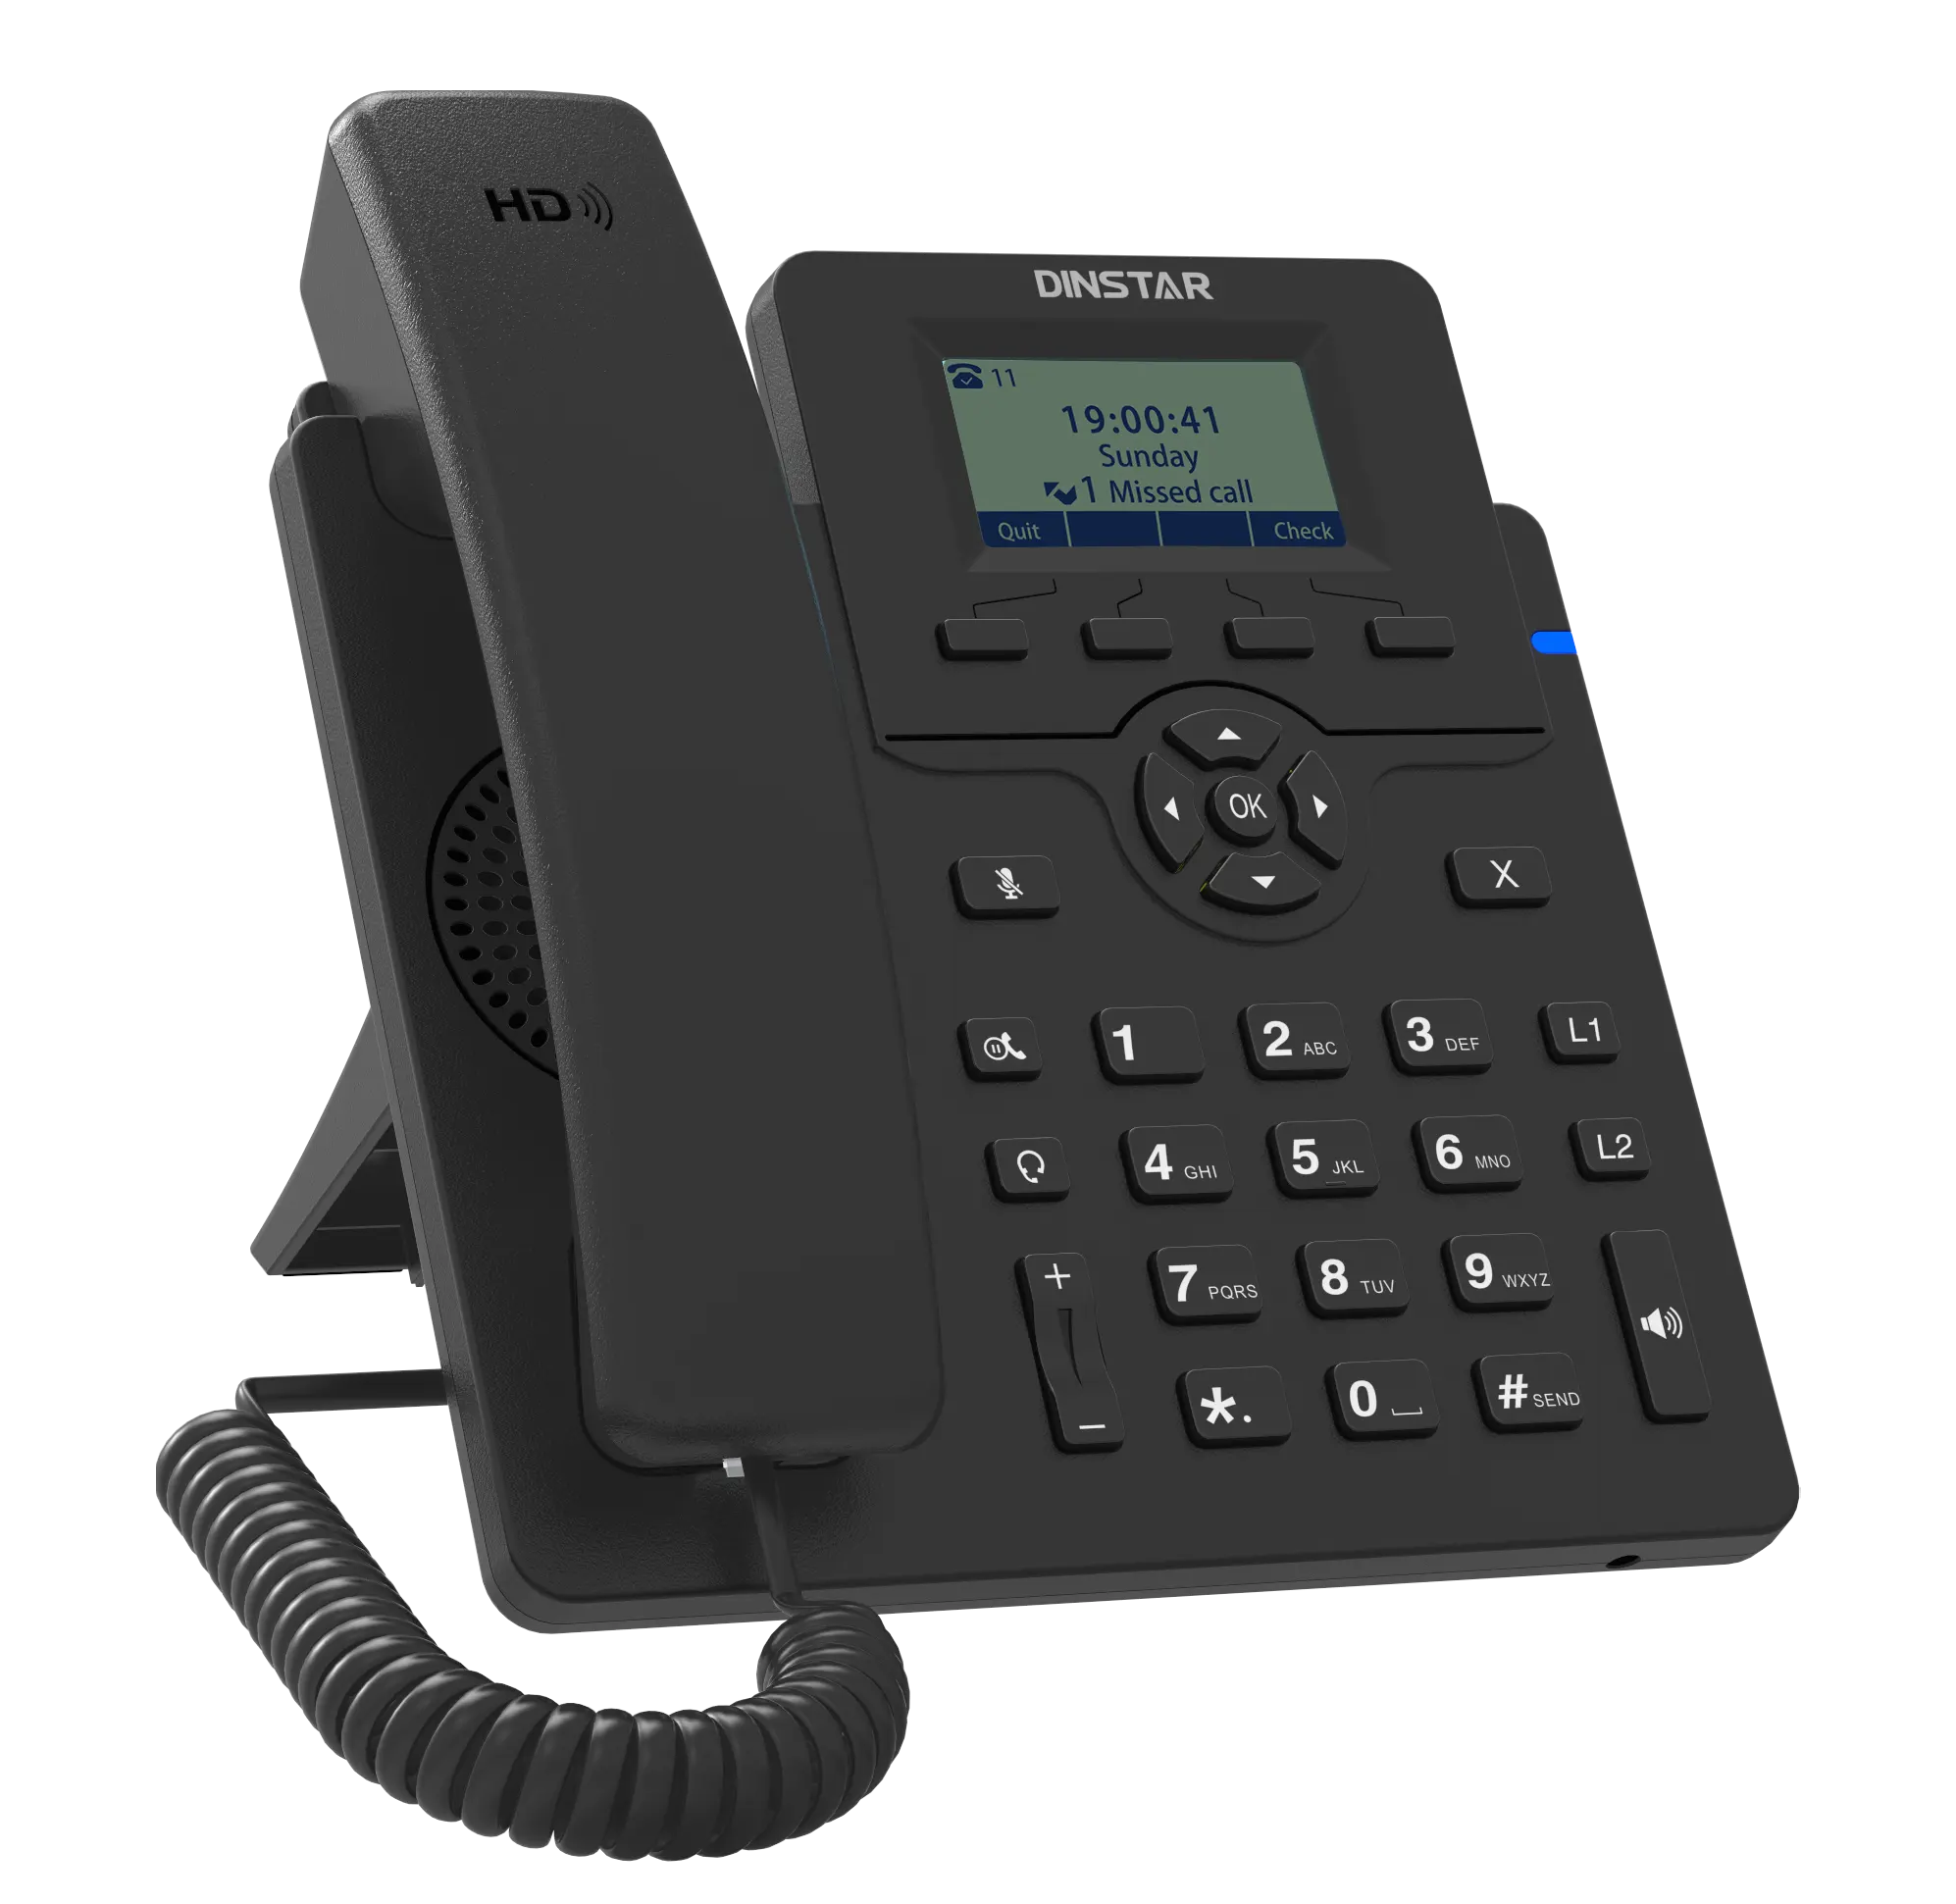 Iş ve konferans için IP telefon VoIP telefon SIP telefonlar